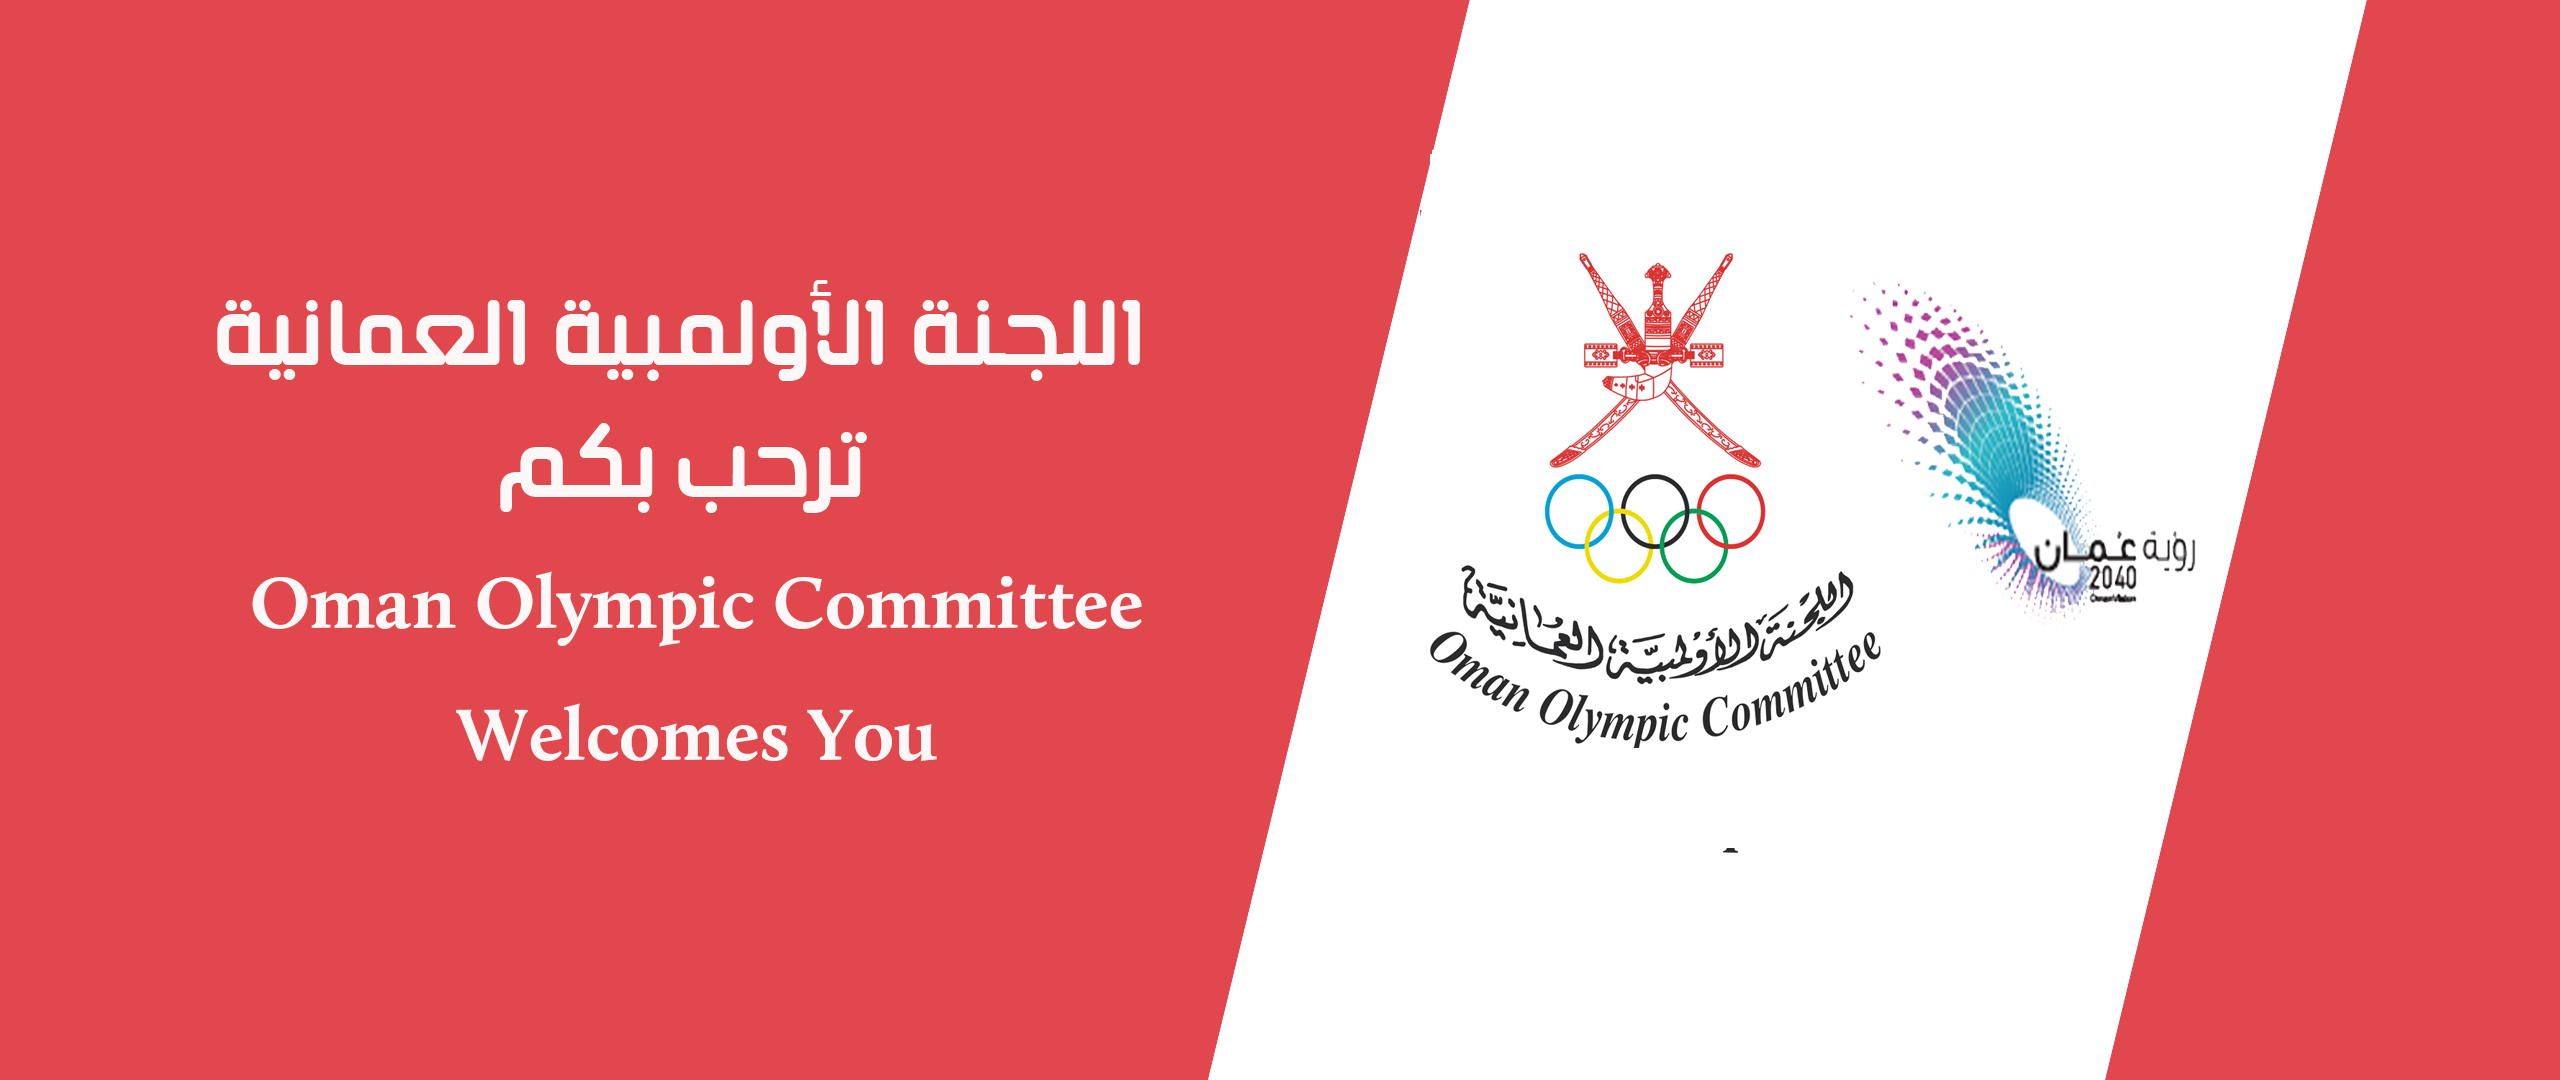 نبذة تاريخية اللجنة الأولمبية سلطنة عمان